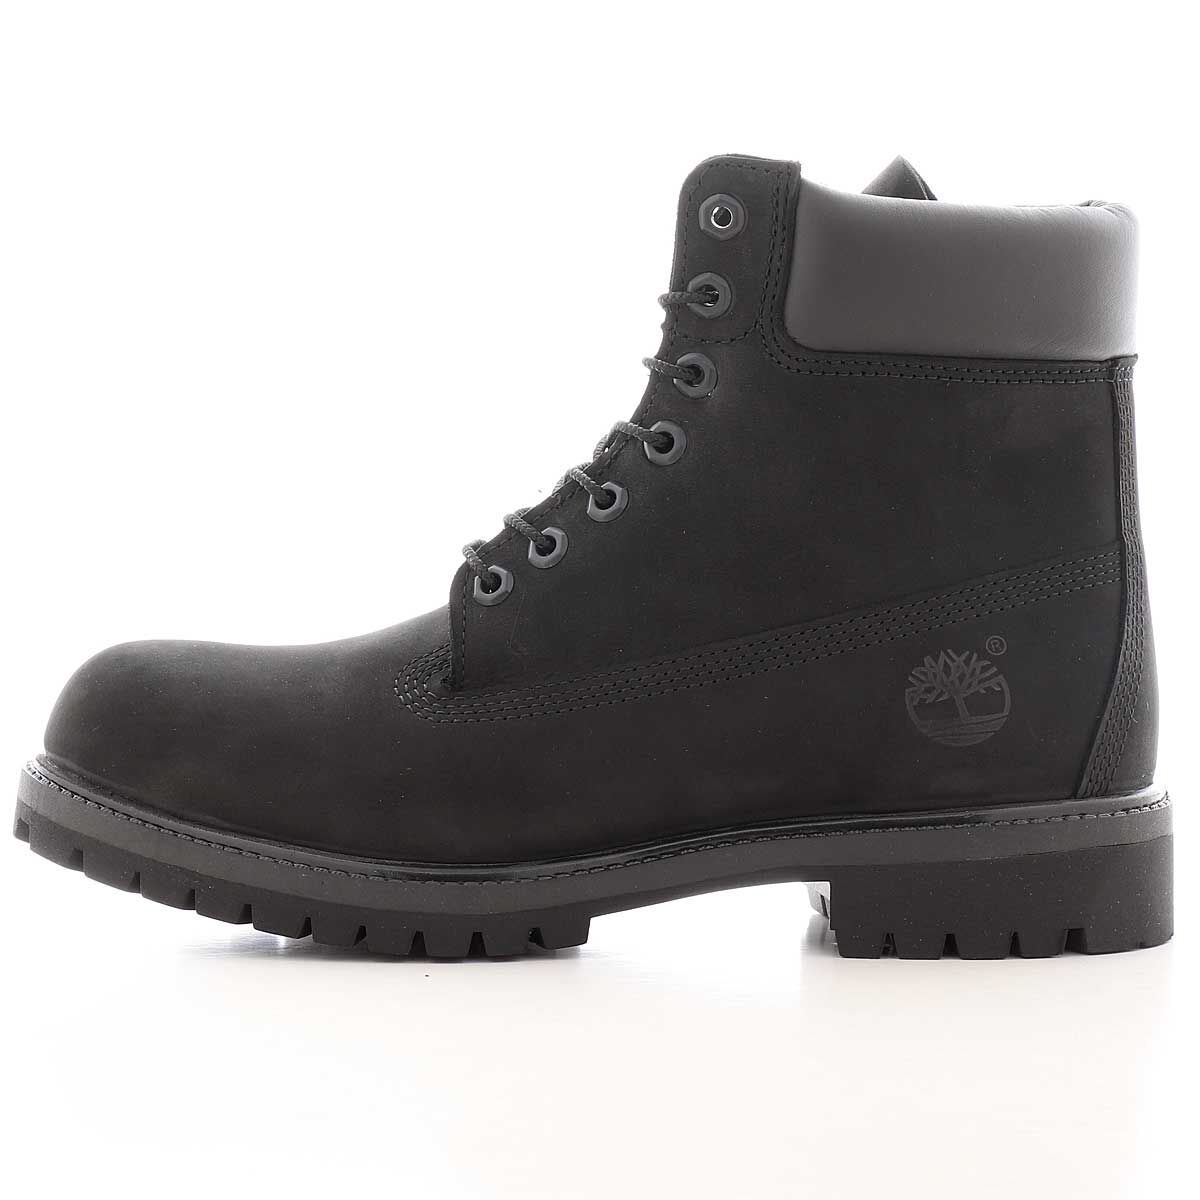 Timberland 6 Inch Premium Boot, Black